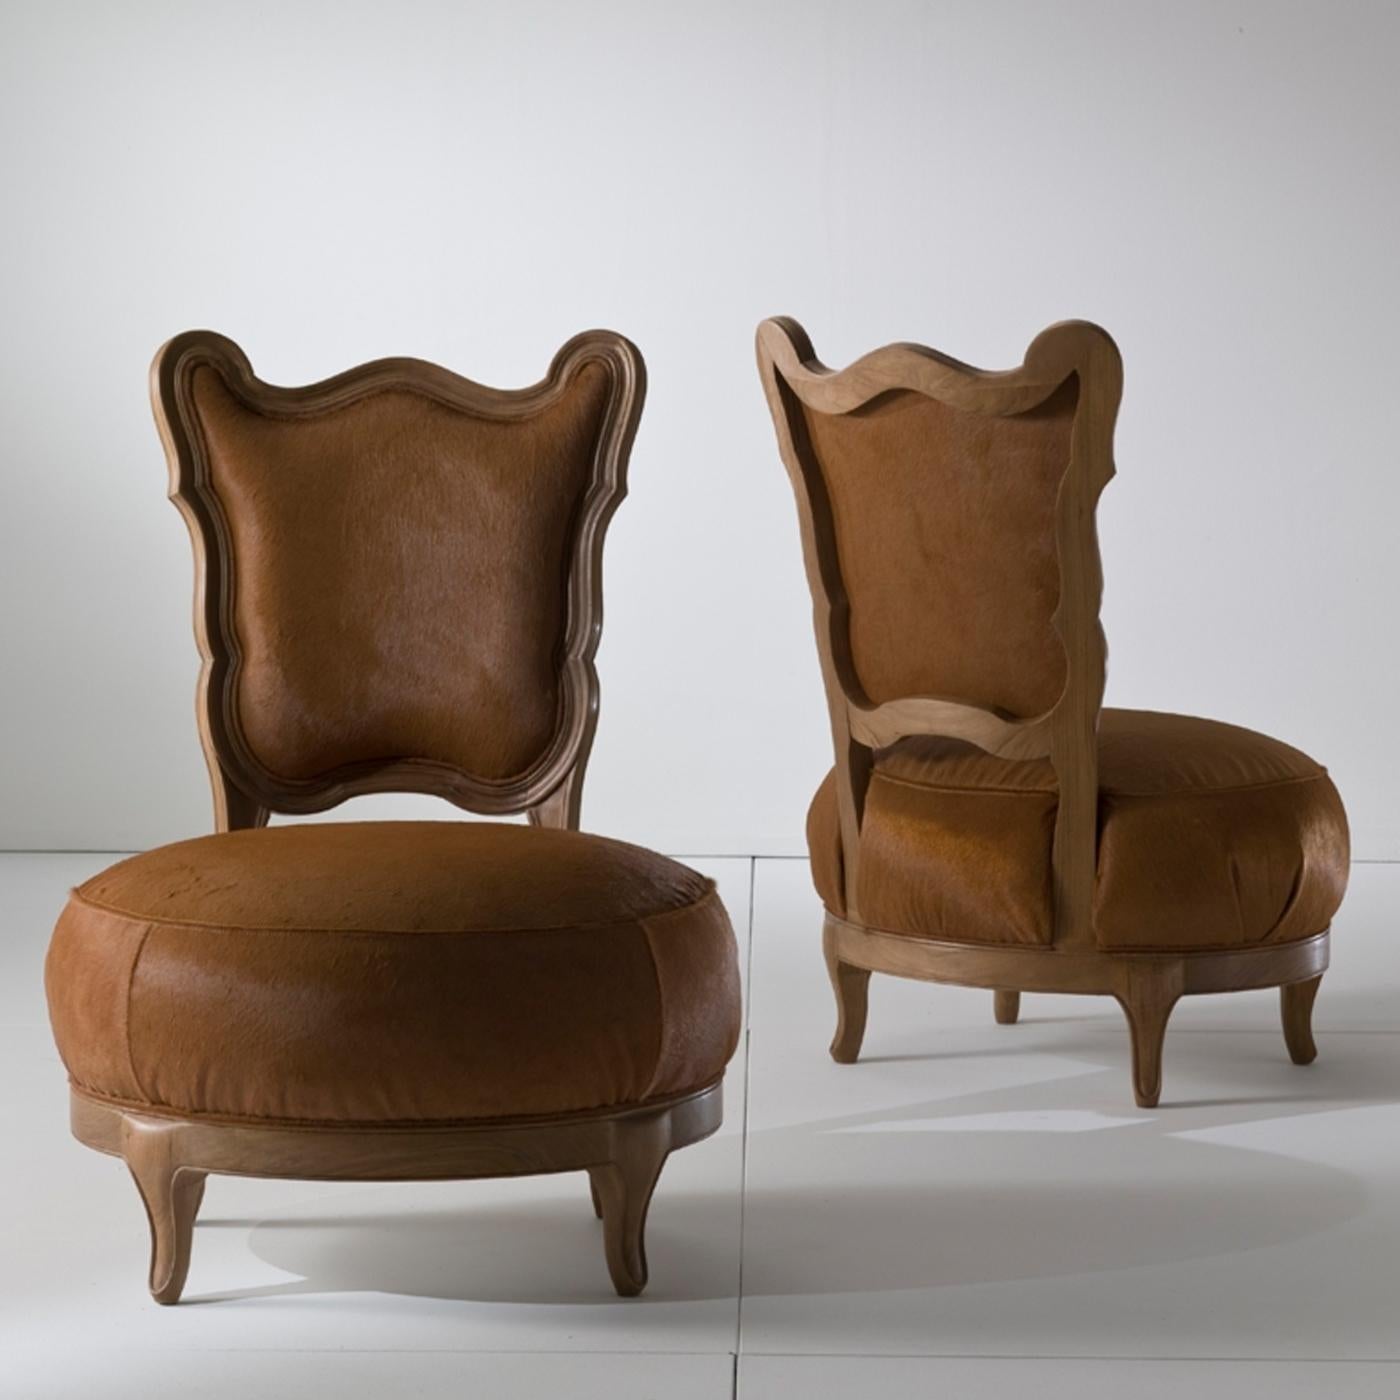 Der elegante und witzige Gattona-Stuhl von Nigel Coates ist für den Lounge-Bereich gedacht. Die runde Form des Sitzes, die durch die Polsterung und das weiche Pferdefell noch verstärkt wird, ist eindeutig von der einer Katze mit ihren weichen Haaren